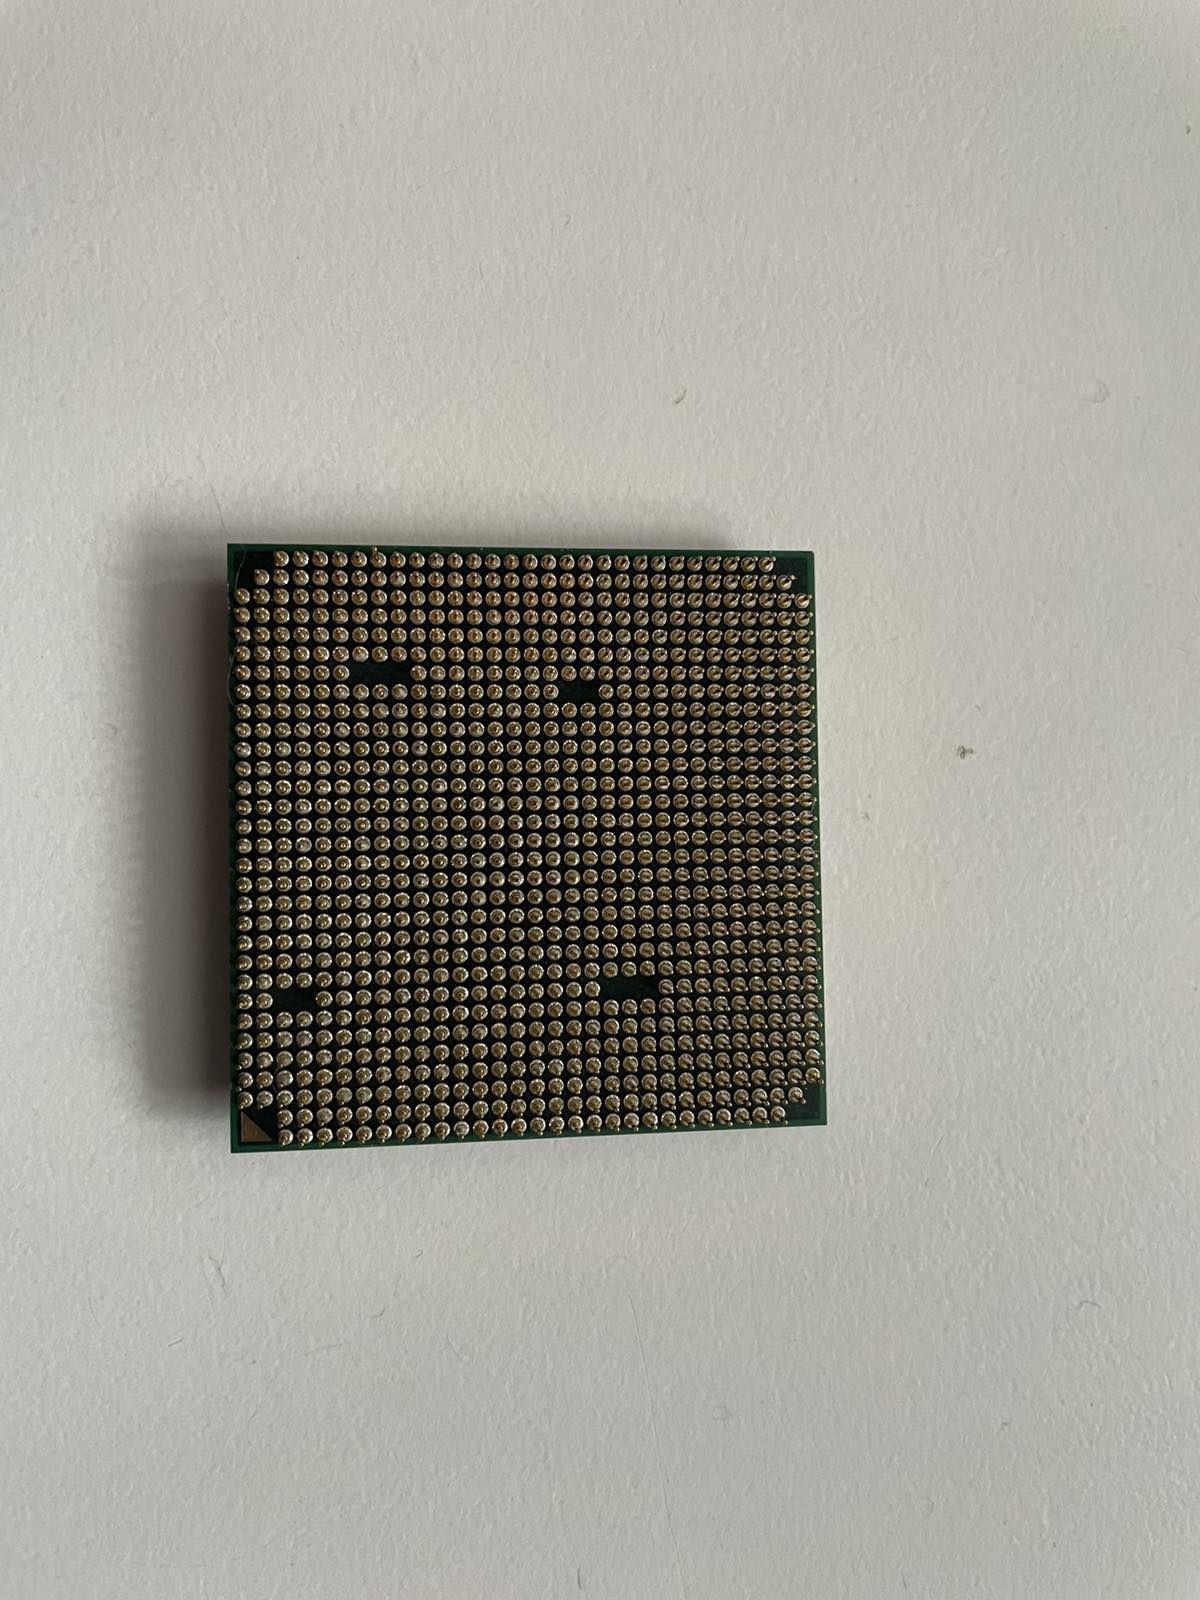 AMD Athlon II X2 250 (3.0 GHz) ADX2500CK23GM